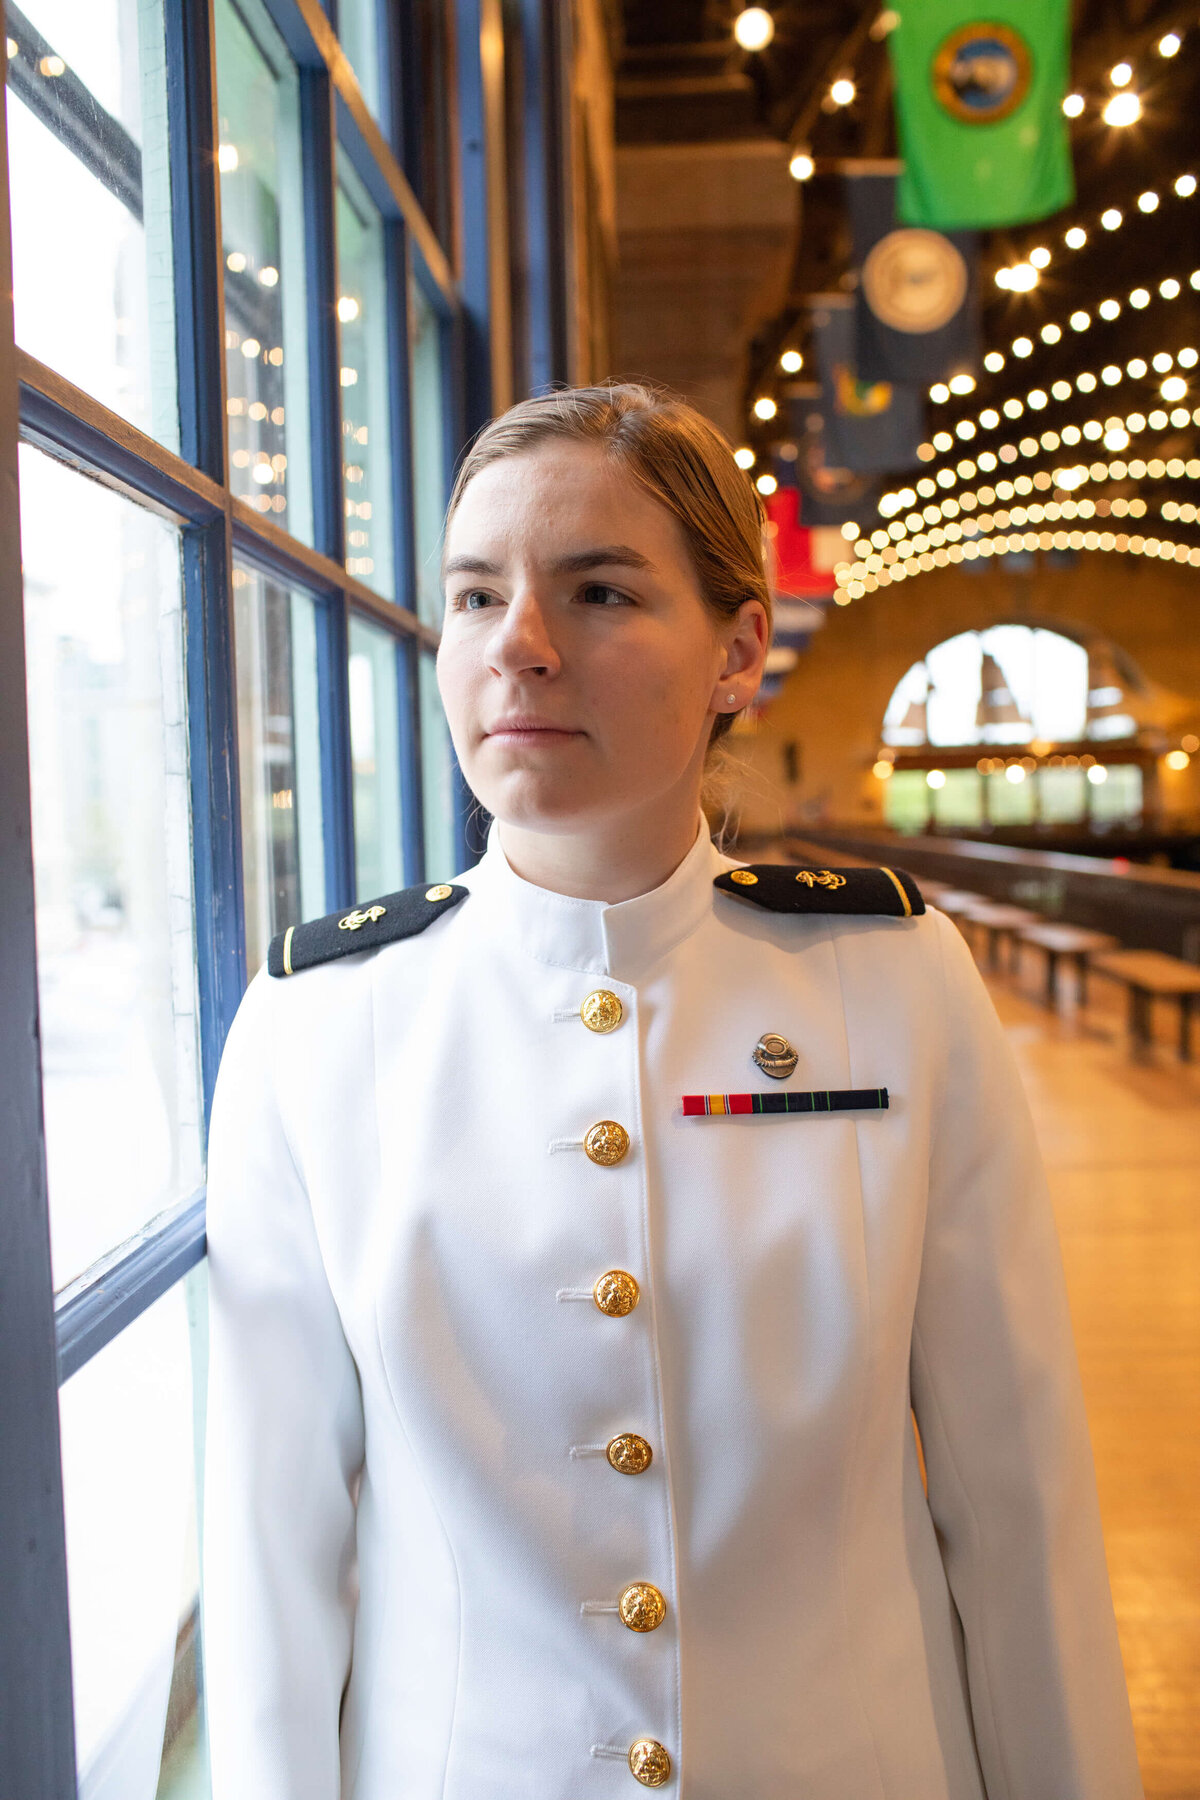 Woman Naval Academy graduate in window light from Dahlgren Hall.